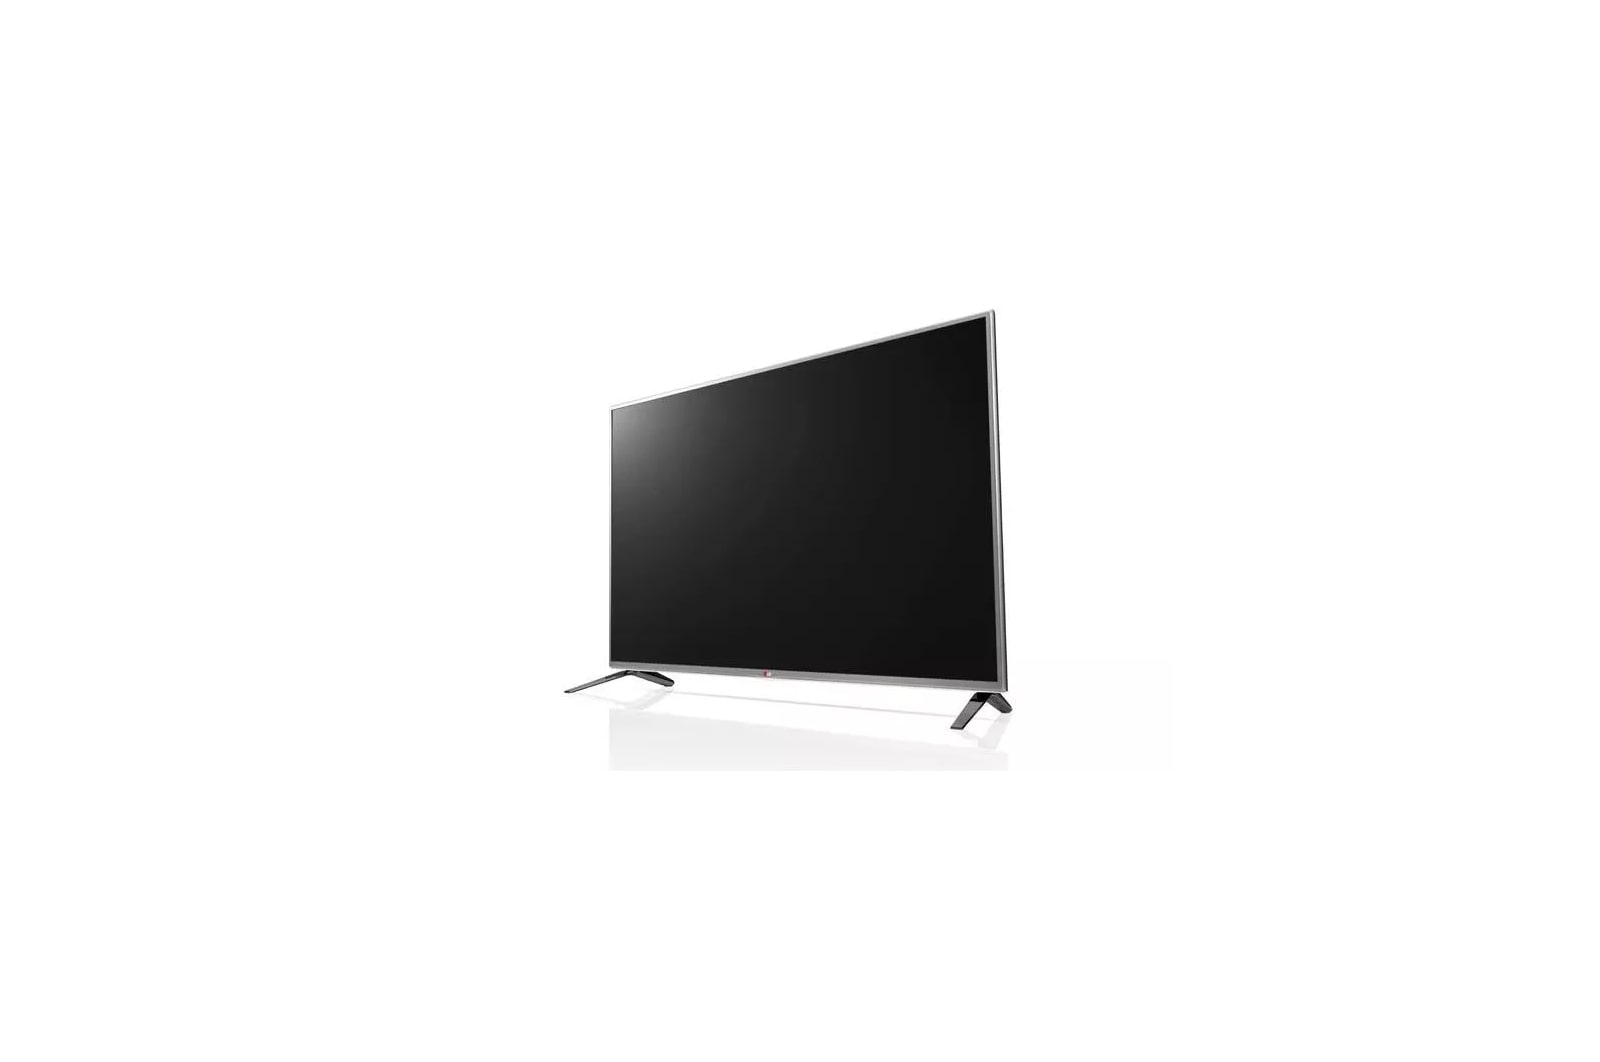 LG 1080p LED TV - 42'' Class (41.9'' Diag) (42LN5400)